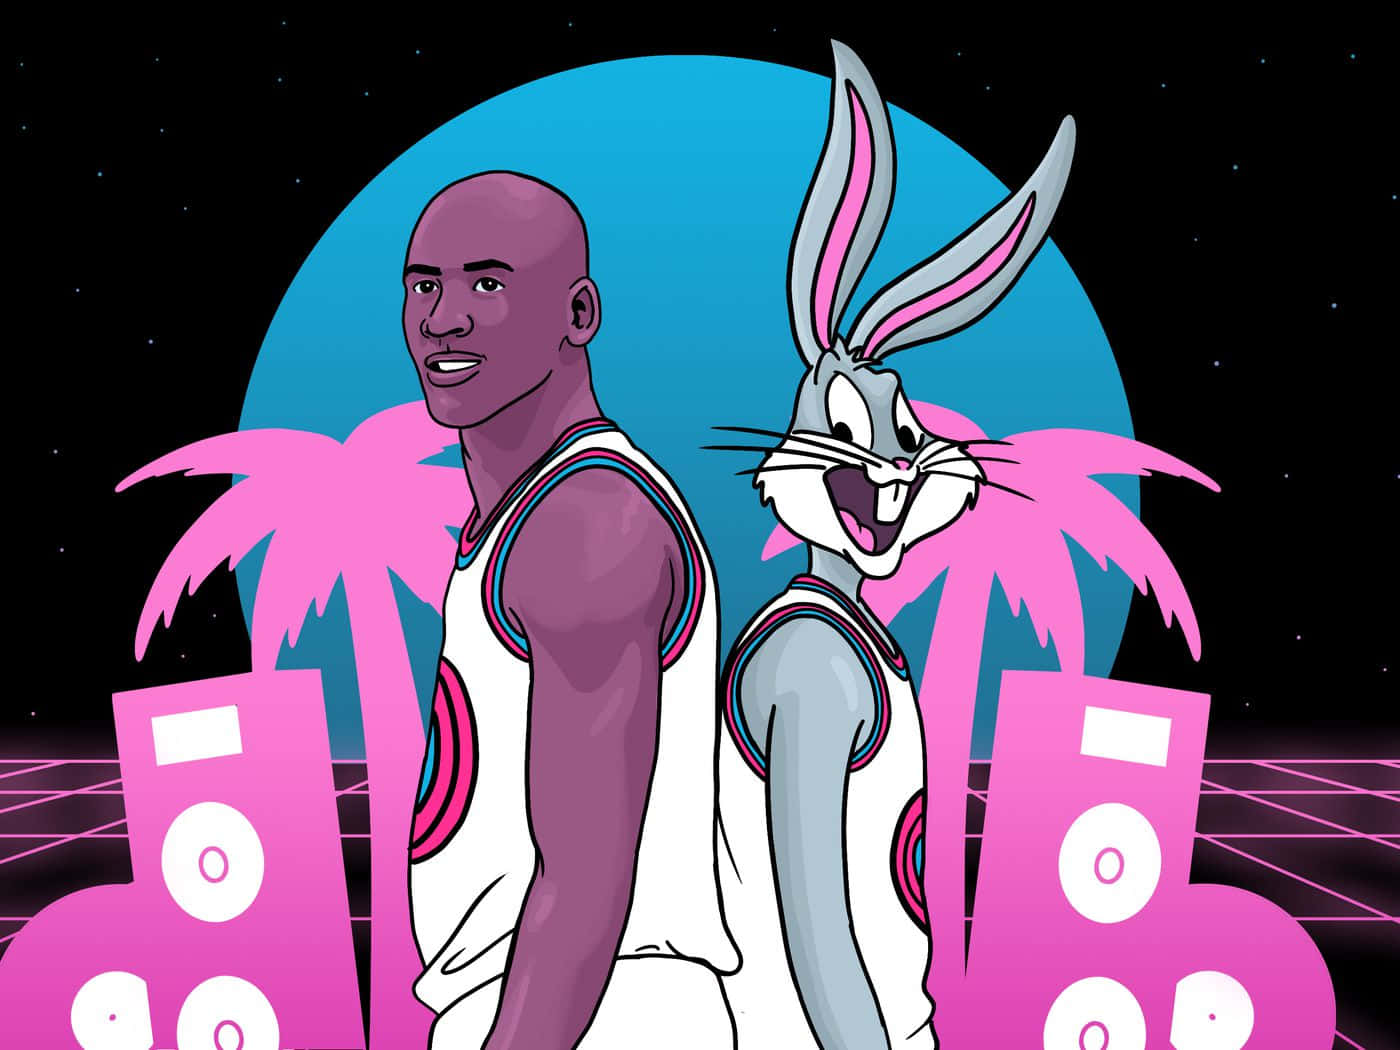 Snyggrymd-tema Wallpaper Med Bugs Bunny Och Michael Jordan Från Space Jam I Vektor-format. Wallpaper